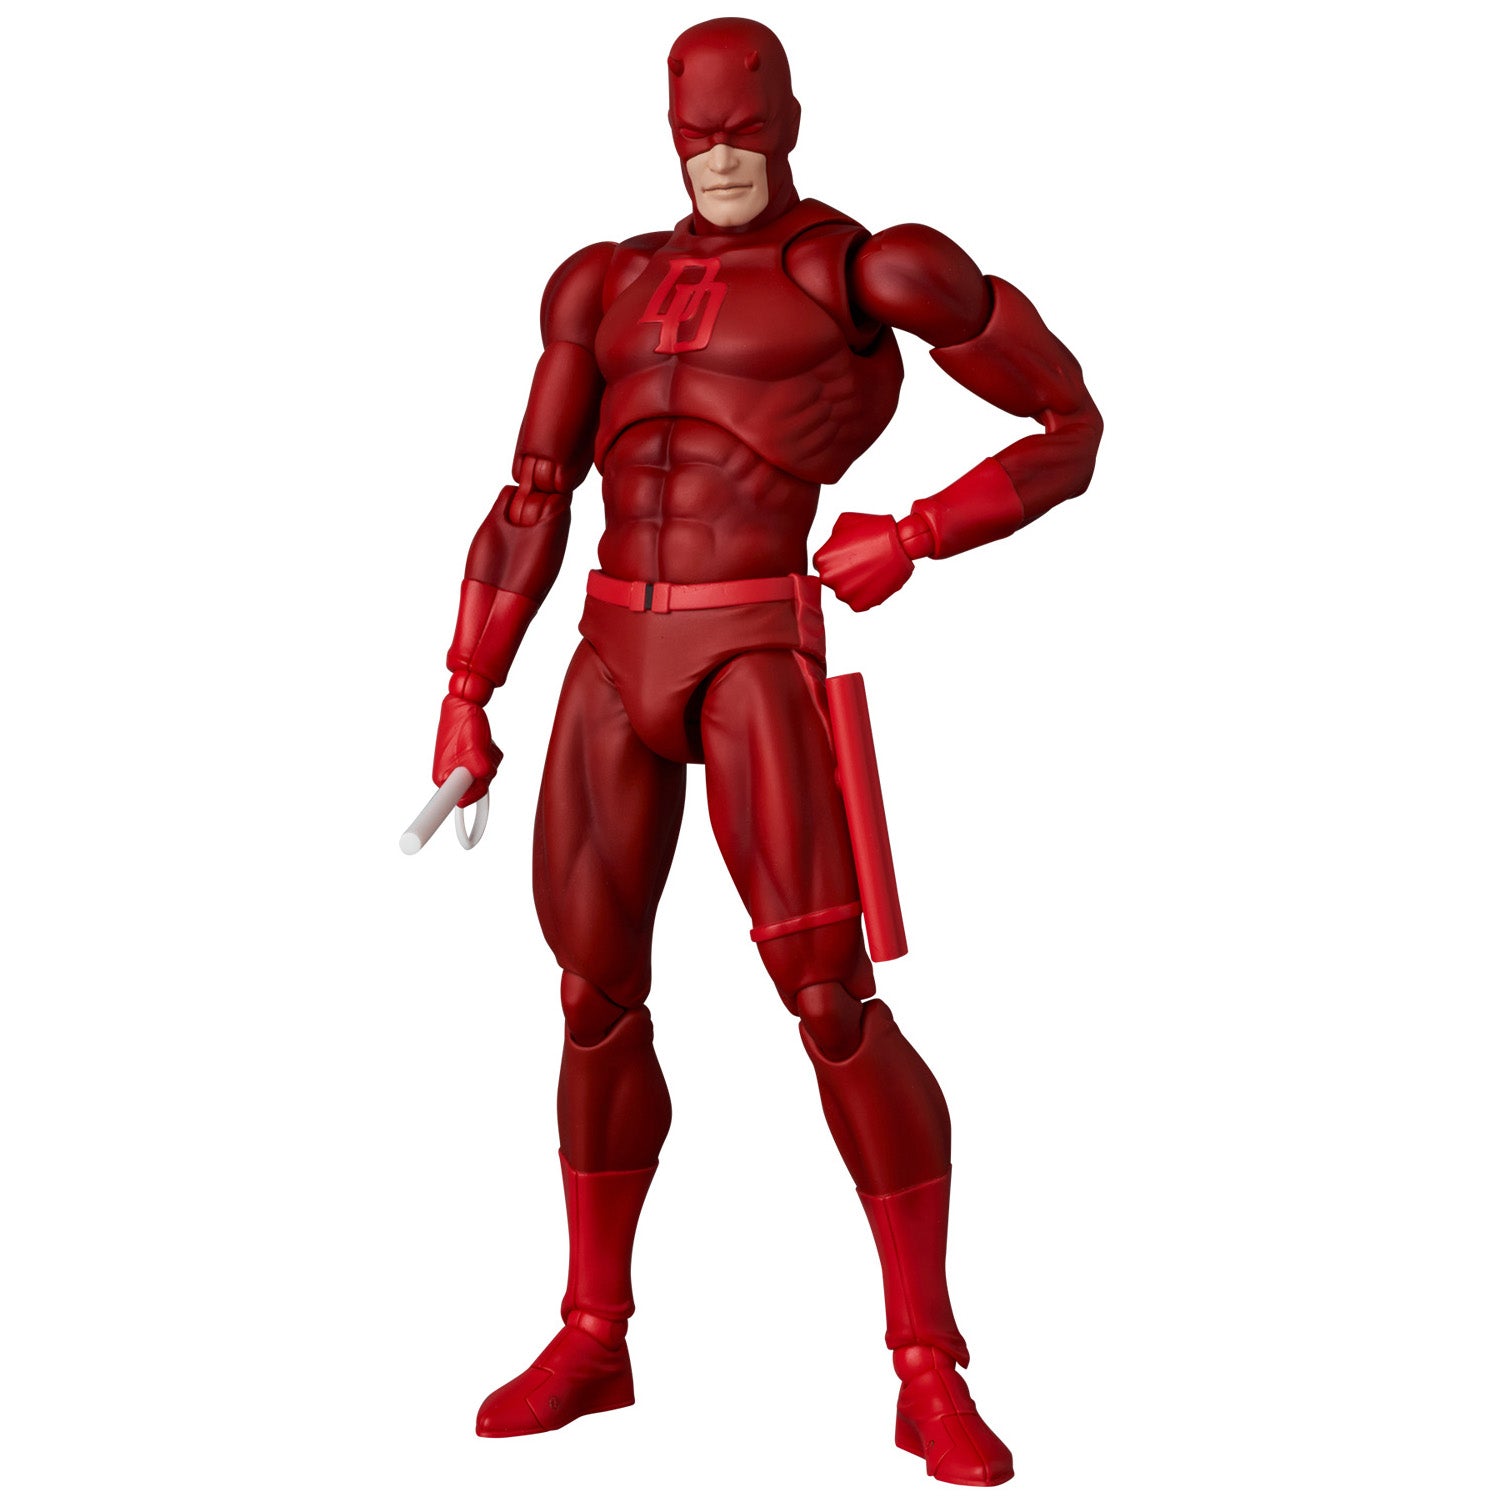 Medicom - MAFEX No. 223 - Marvel - Daredevil (Comic Ver.) (1/12 Scale) - Marvelous Toys